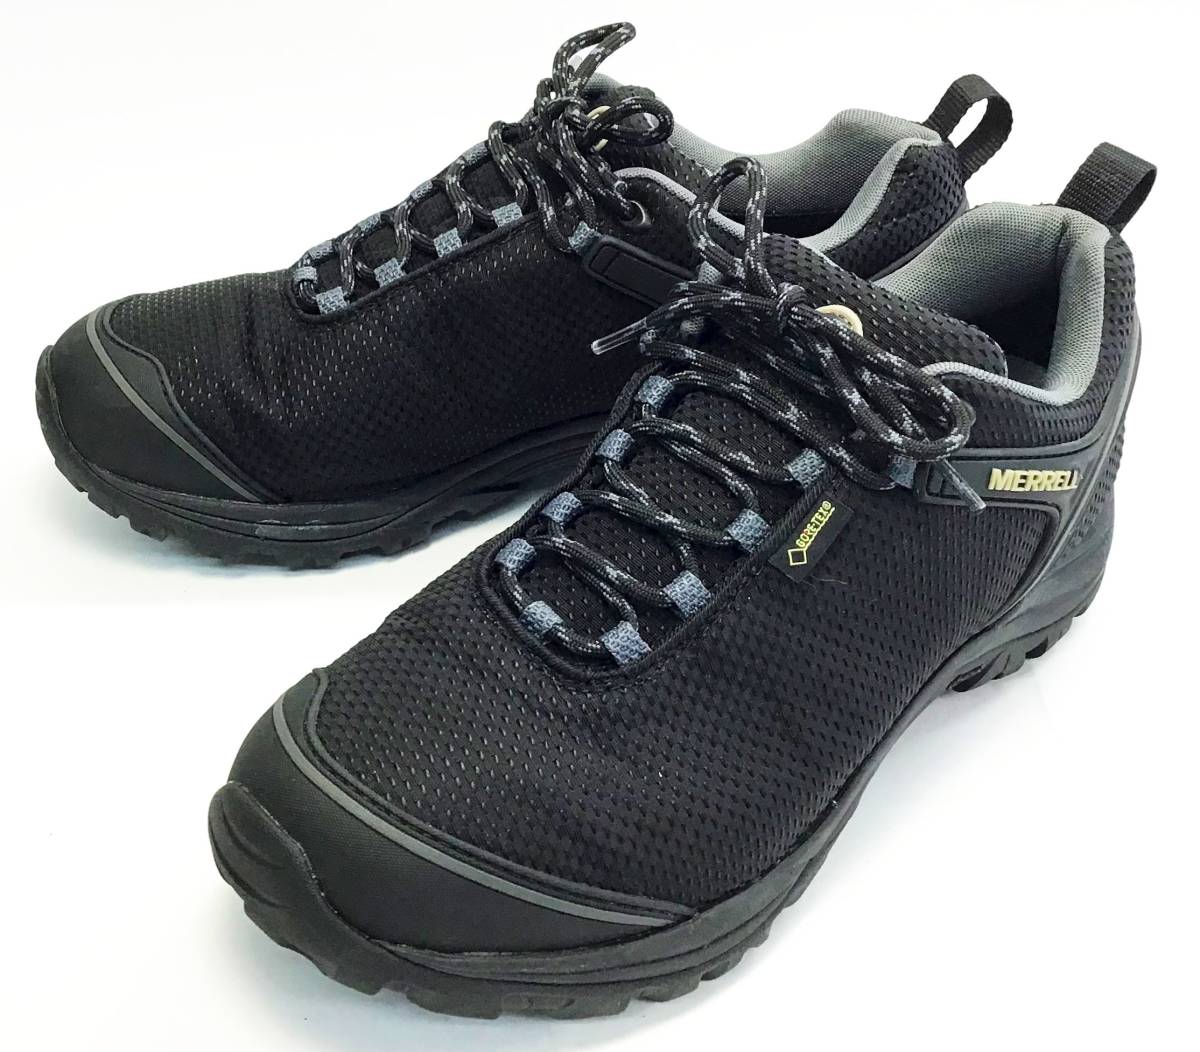 MERRELL トレッキング シューズ カメレオン5 サイズ US9.5 27.5cm ブラック/黒 J575499 ハイキング アウトドア 登山靴 CHAMELEON メレル